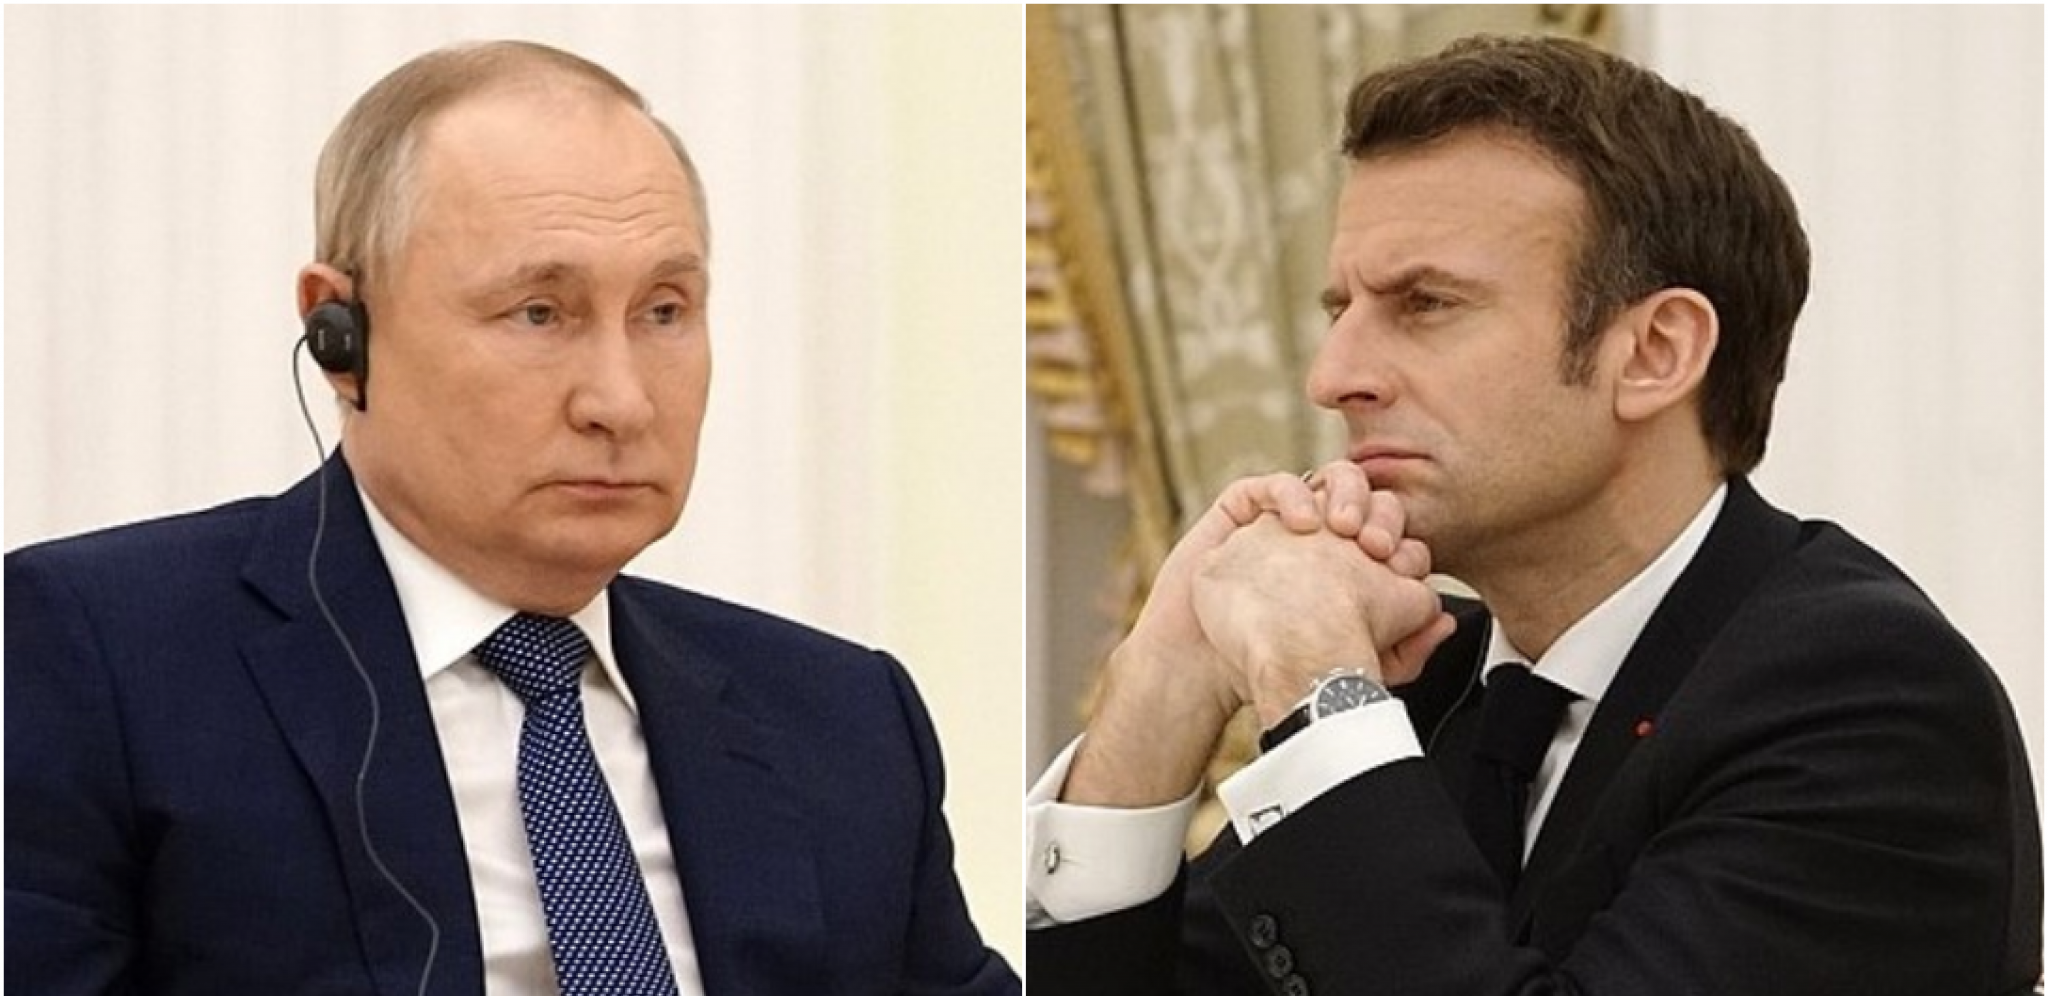 RUSKI LIDER ŽELI DA OBNOVI IMPERIJU? Makron o "Putinovom paradoksu" i namerama šefa Kremlja